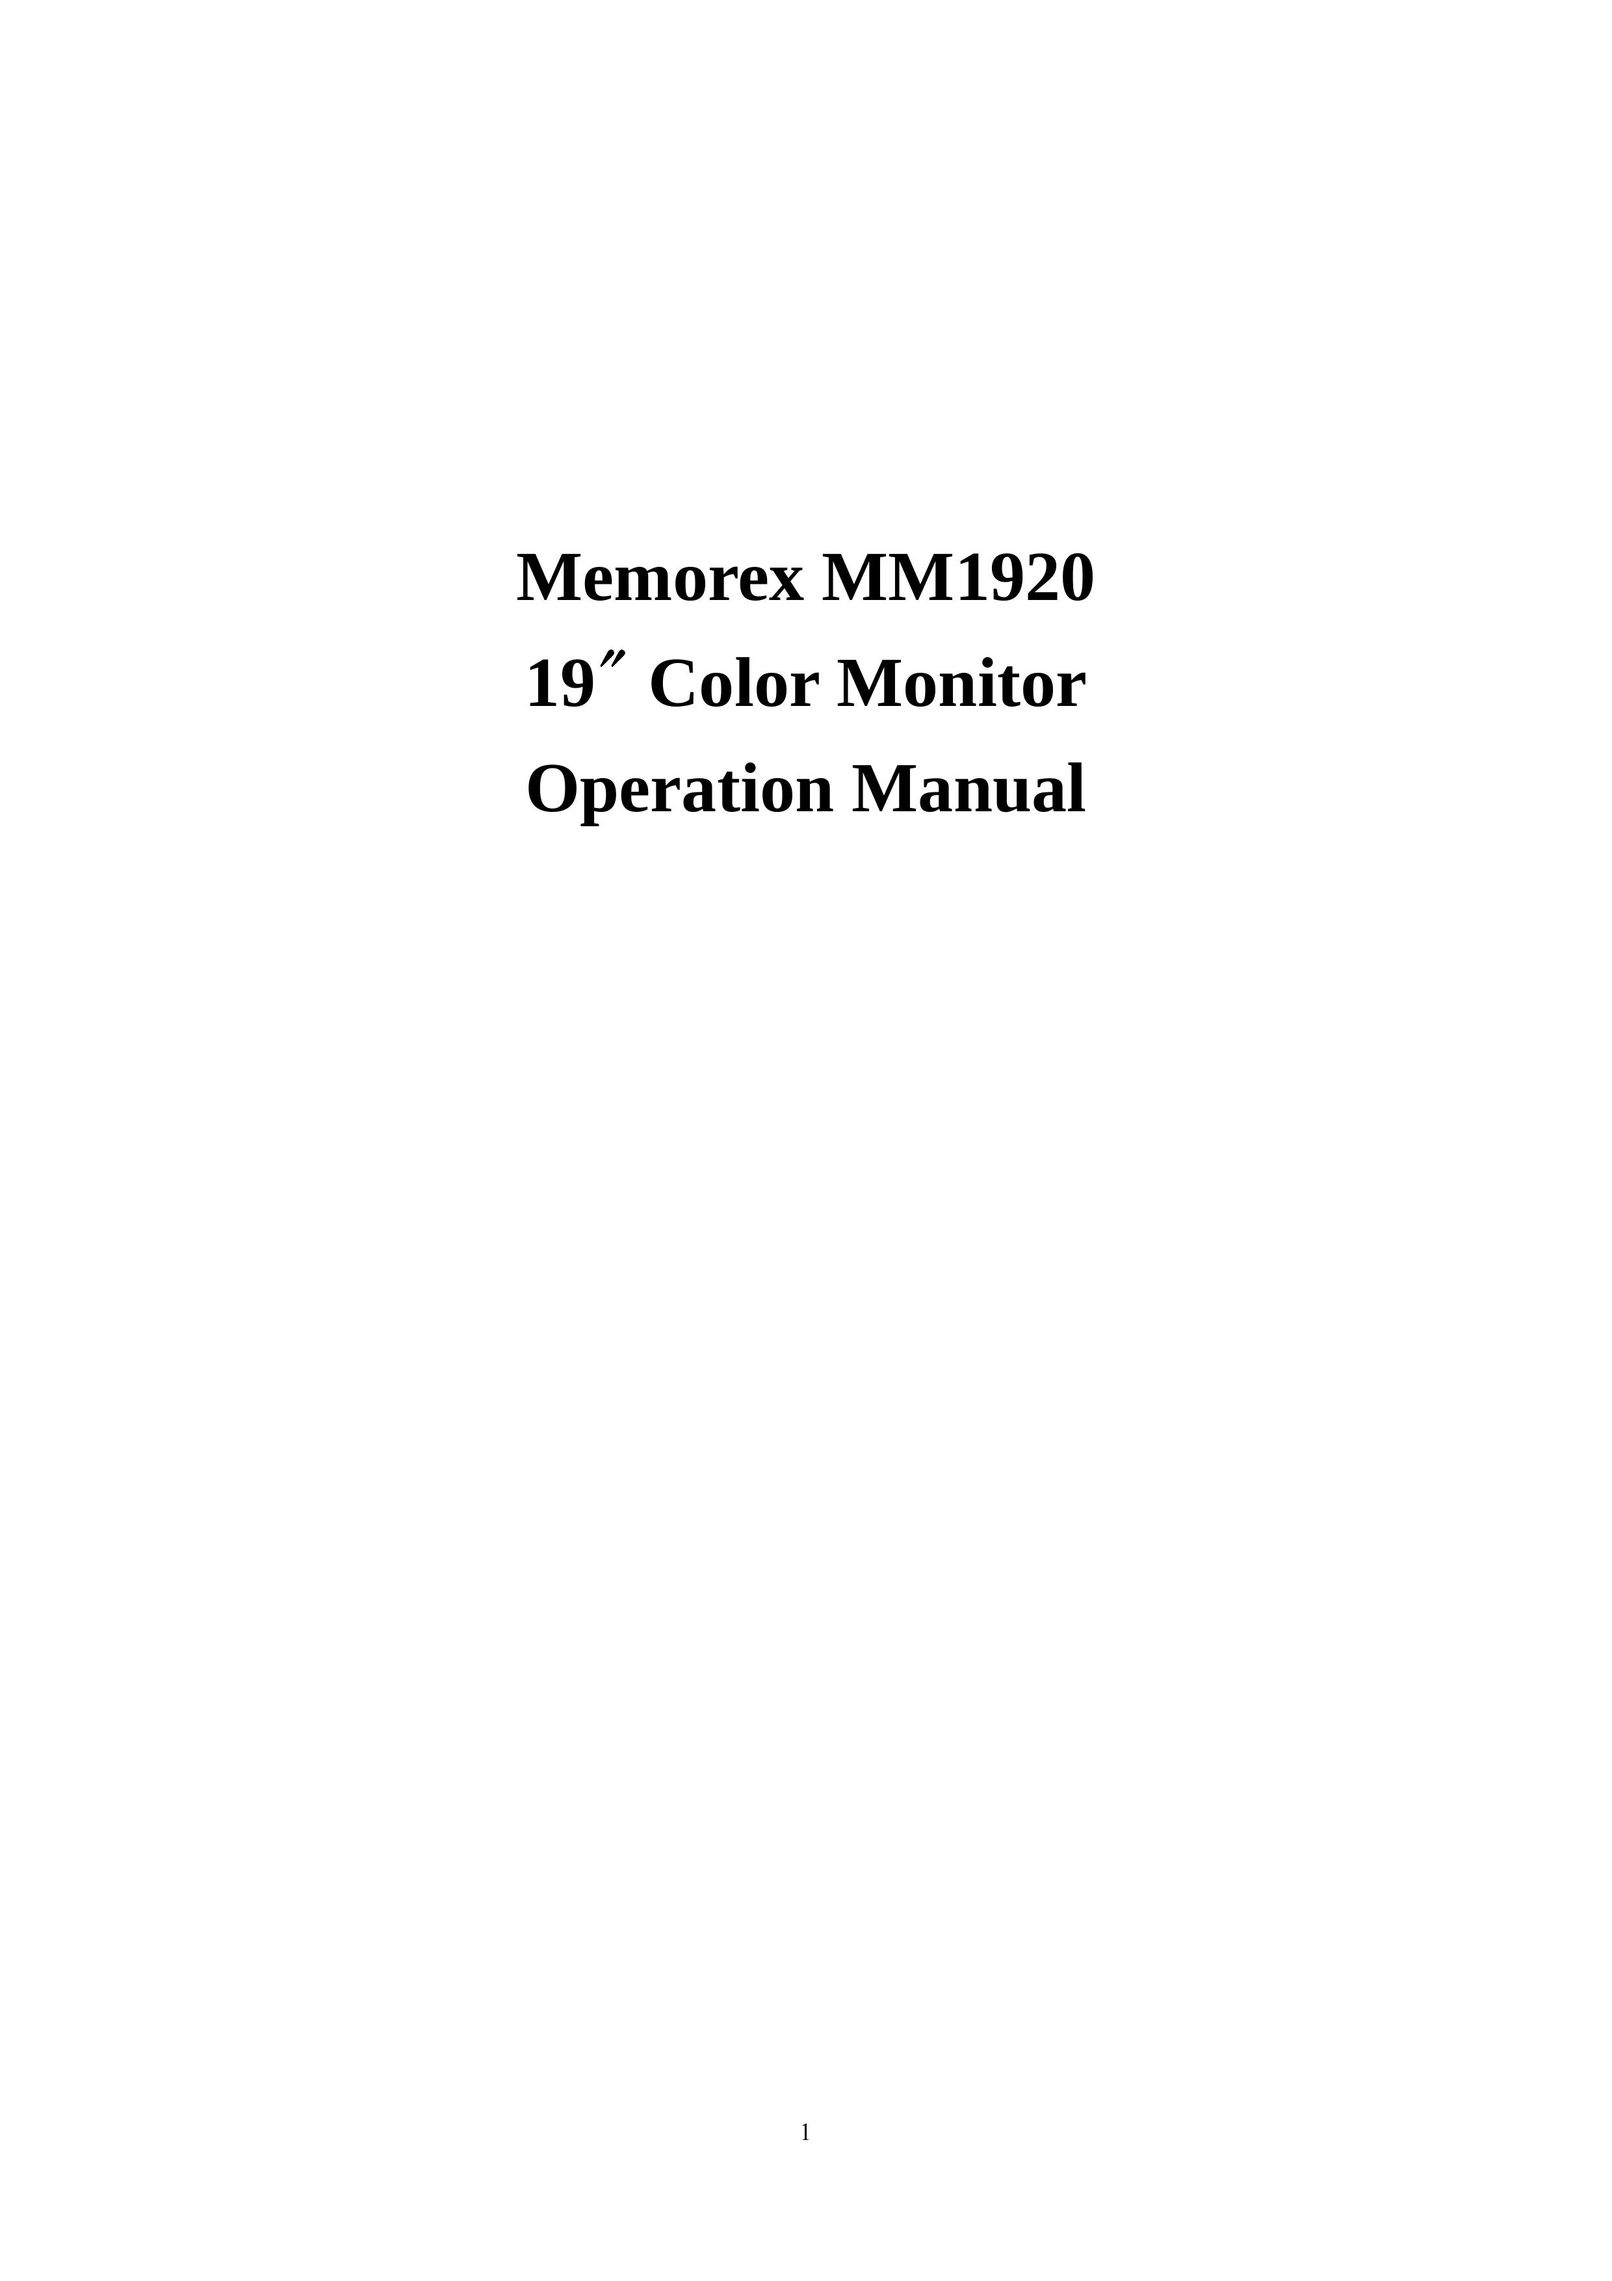 Memorex MM1920 Car Video System User Manual